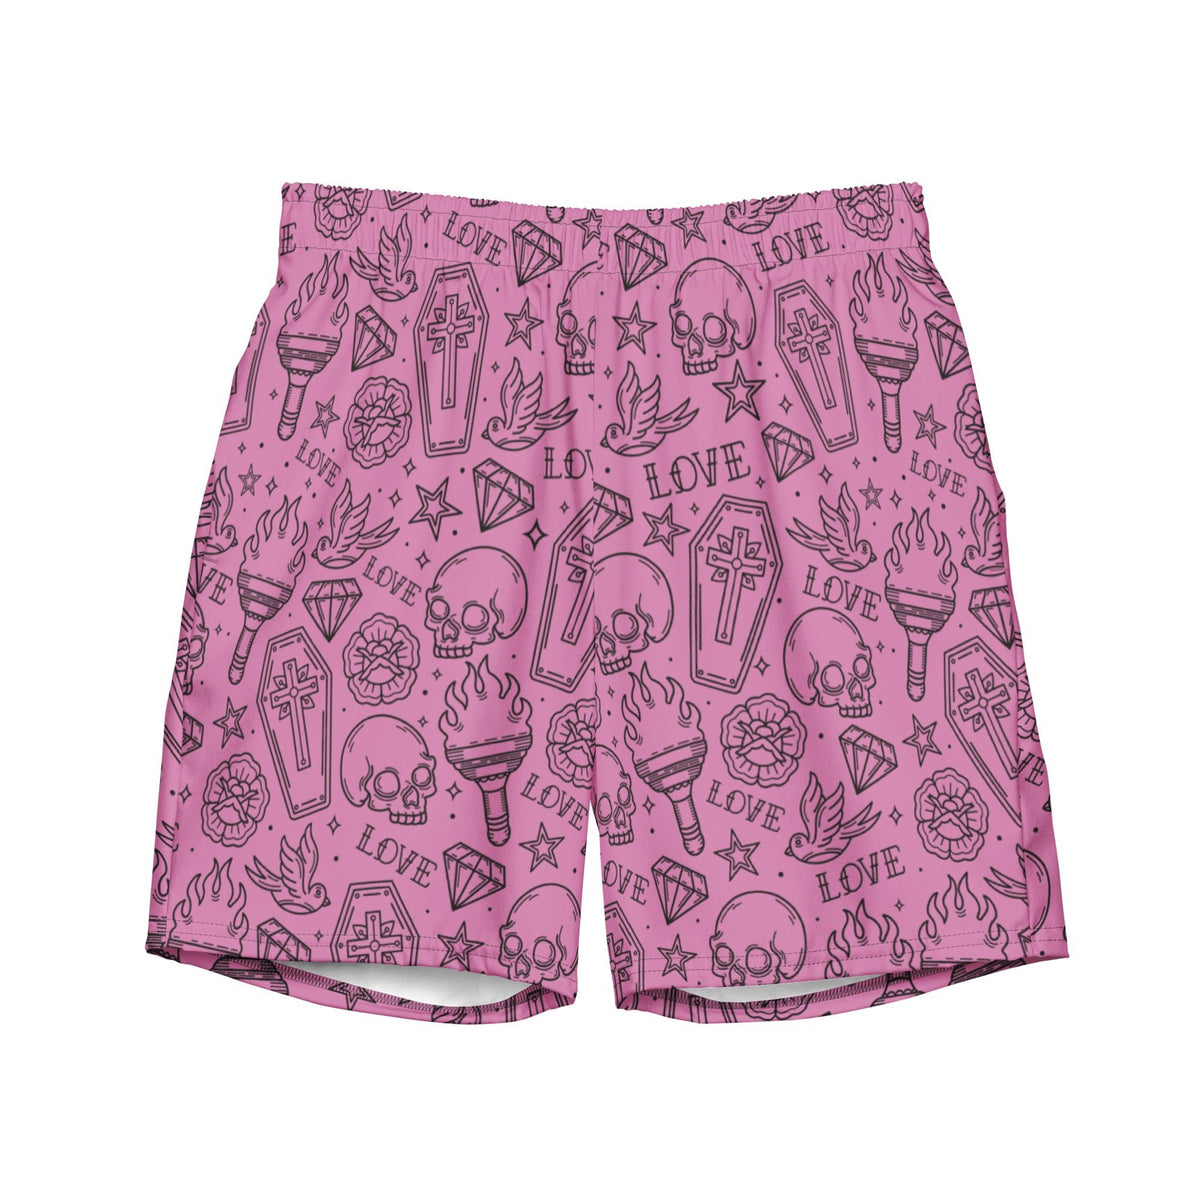 Punk in Pink Swim Trunks - Goth Cloth Co.4425325_14636